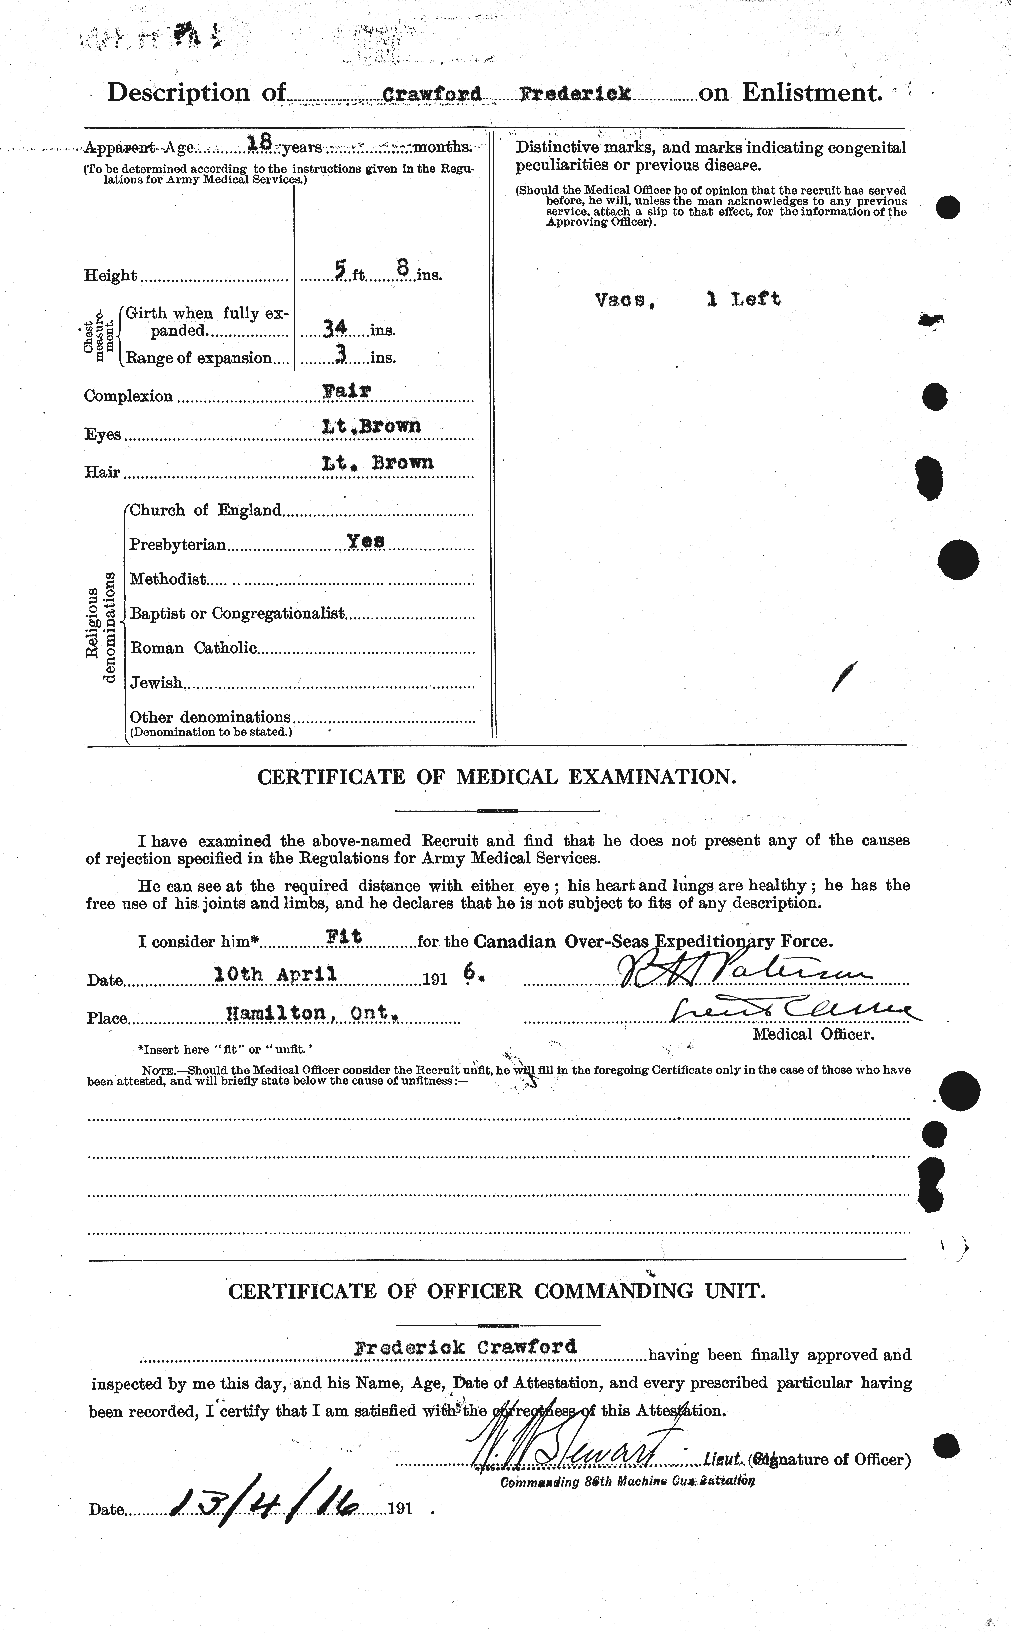 Dossiers du Personnel de la Première Guerre mondiale - CEC 060728b